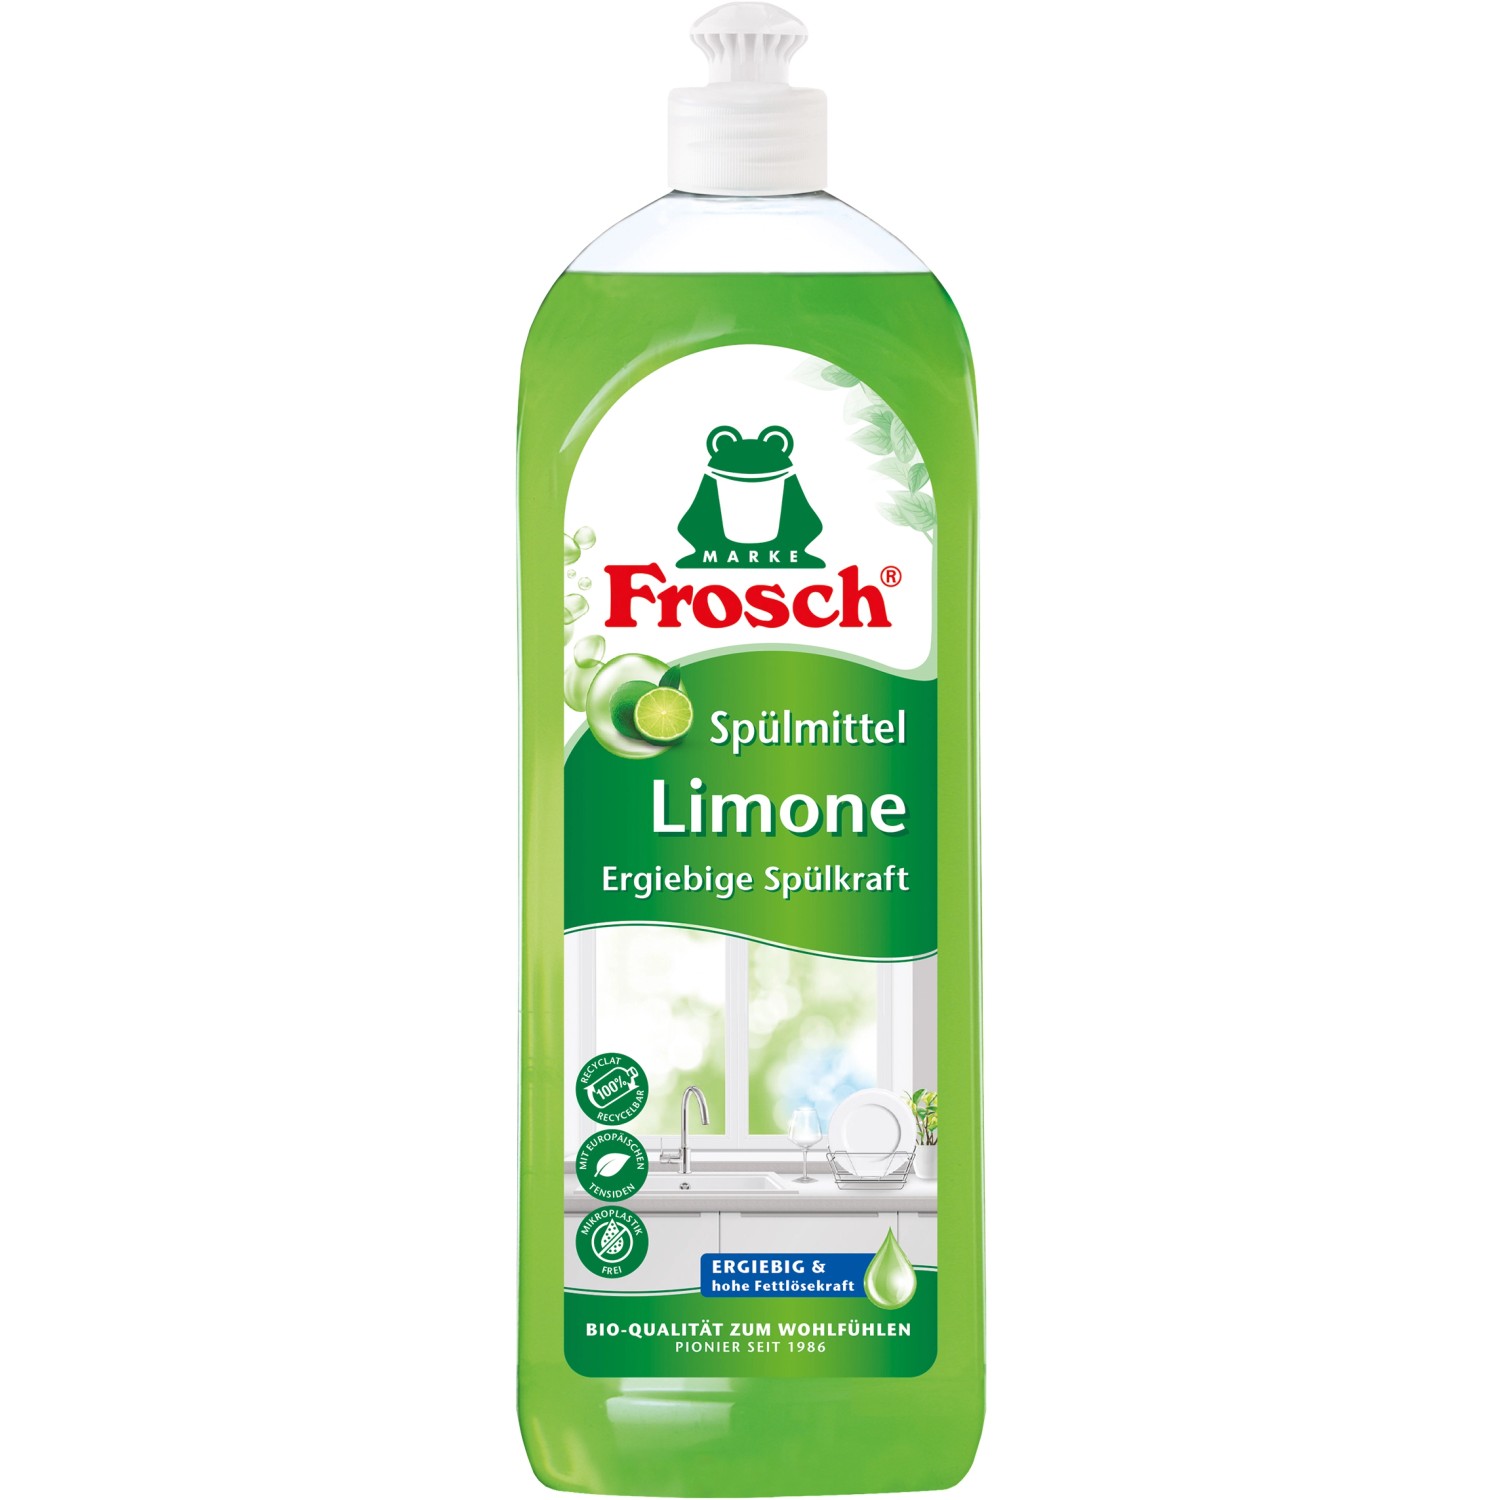 Frosch Spülmittel Limone 750 ml